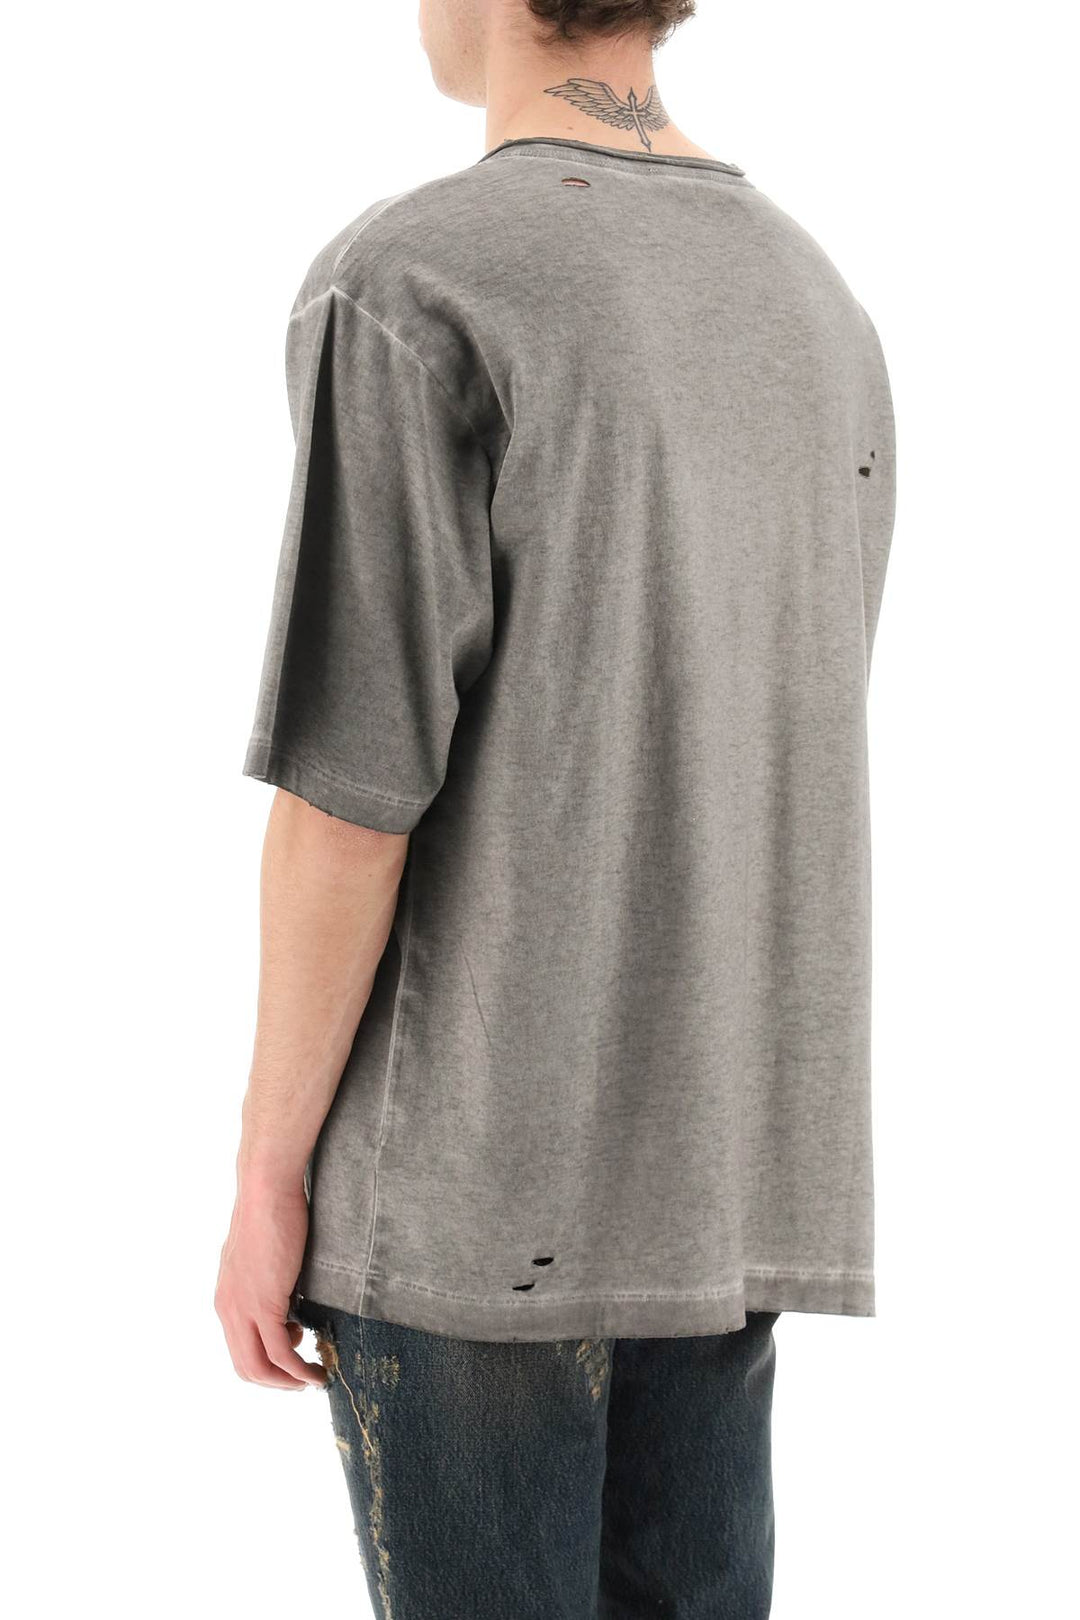 T Shirt In Cotone Lavato Con Dettagli Destroyed - Dolce & Gabbana - Uomo